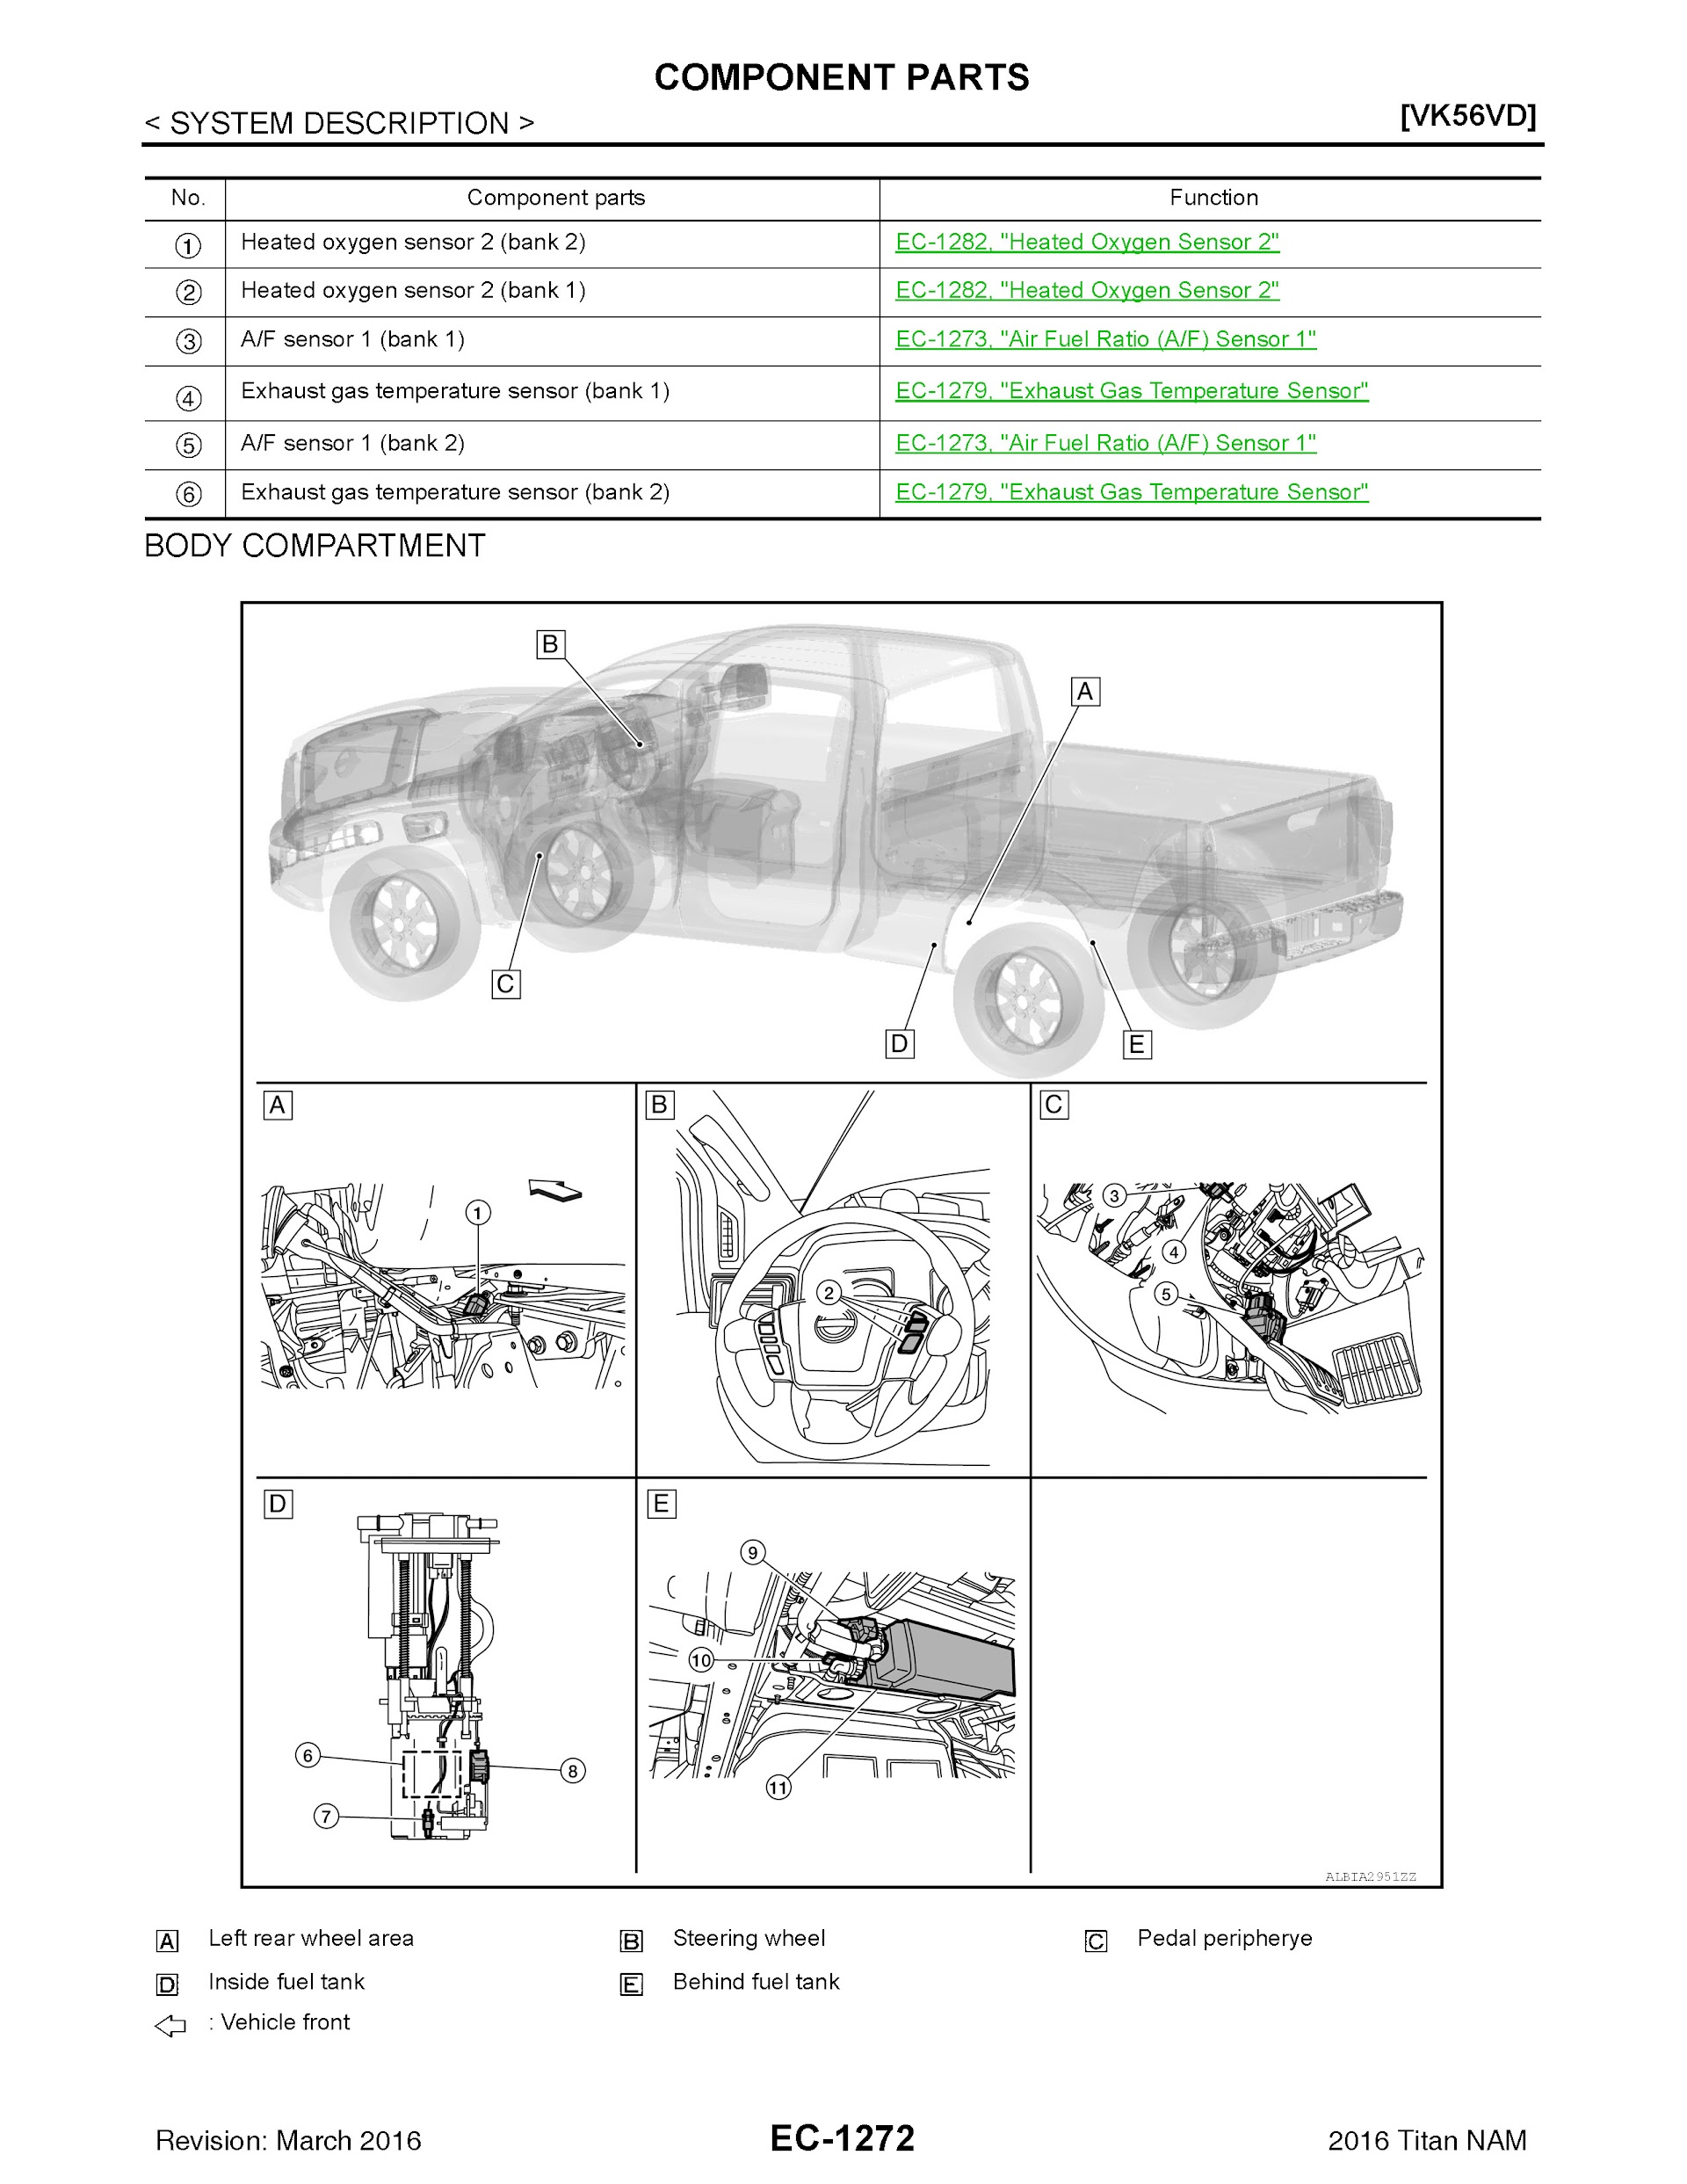 2016 Nissan Titan XD Repair Manual, VK56VD Componen Parts